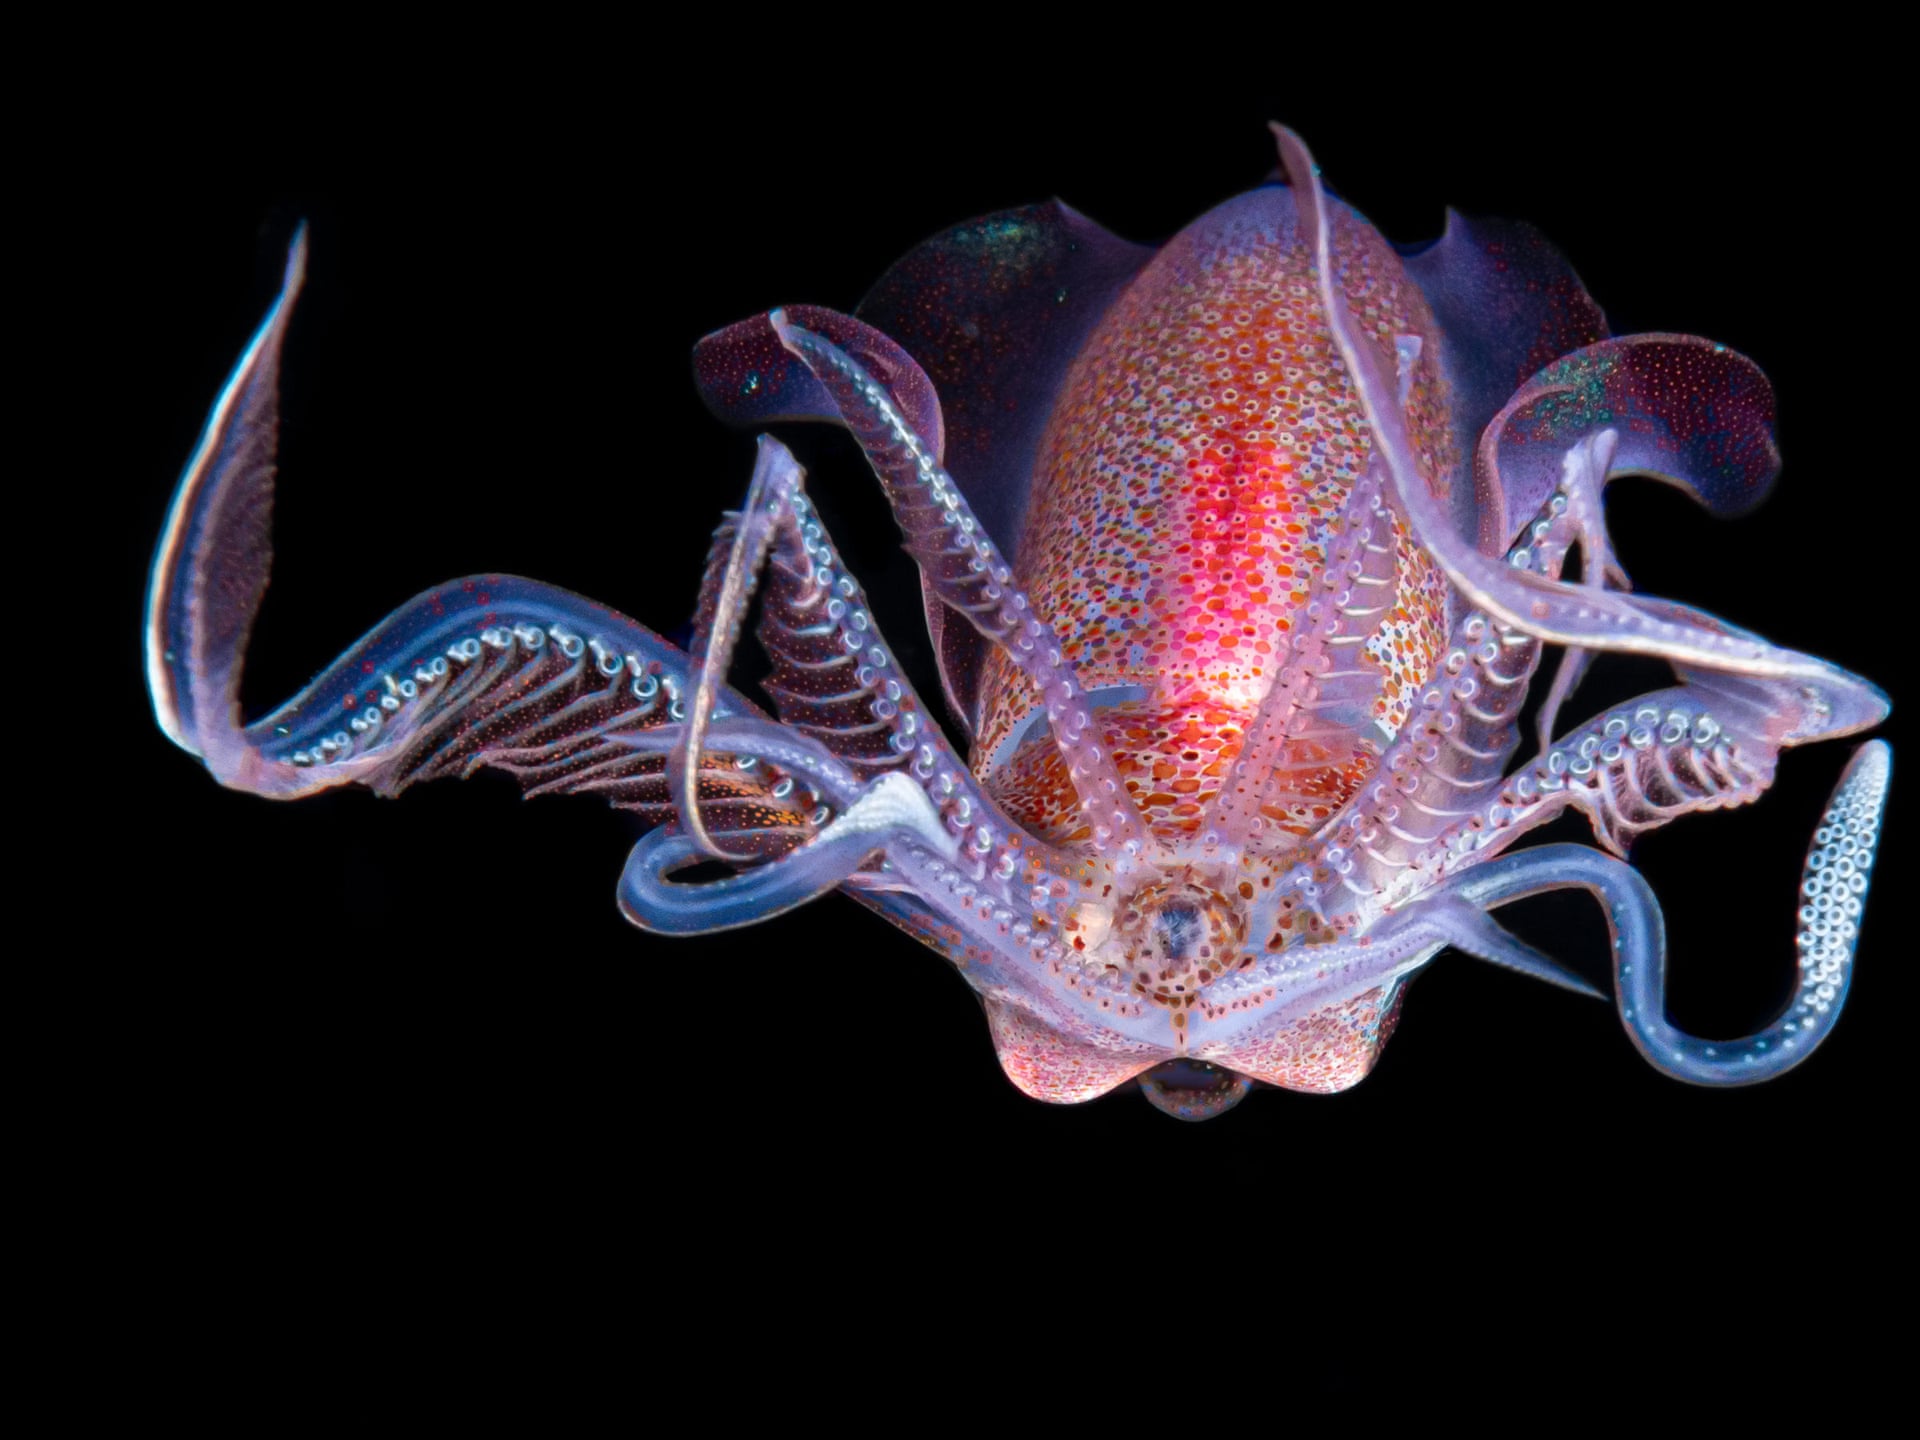 Кальмар-ромб (Thysanoteuthis rhombus) во время ночного погружения в темной воде. Фото: Galice Hoarau / Luminar Bug Photography Awards